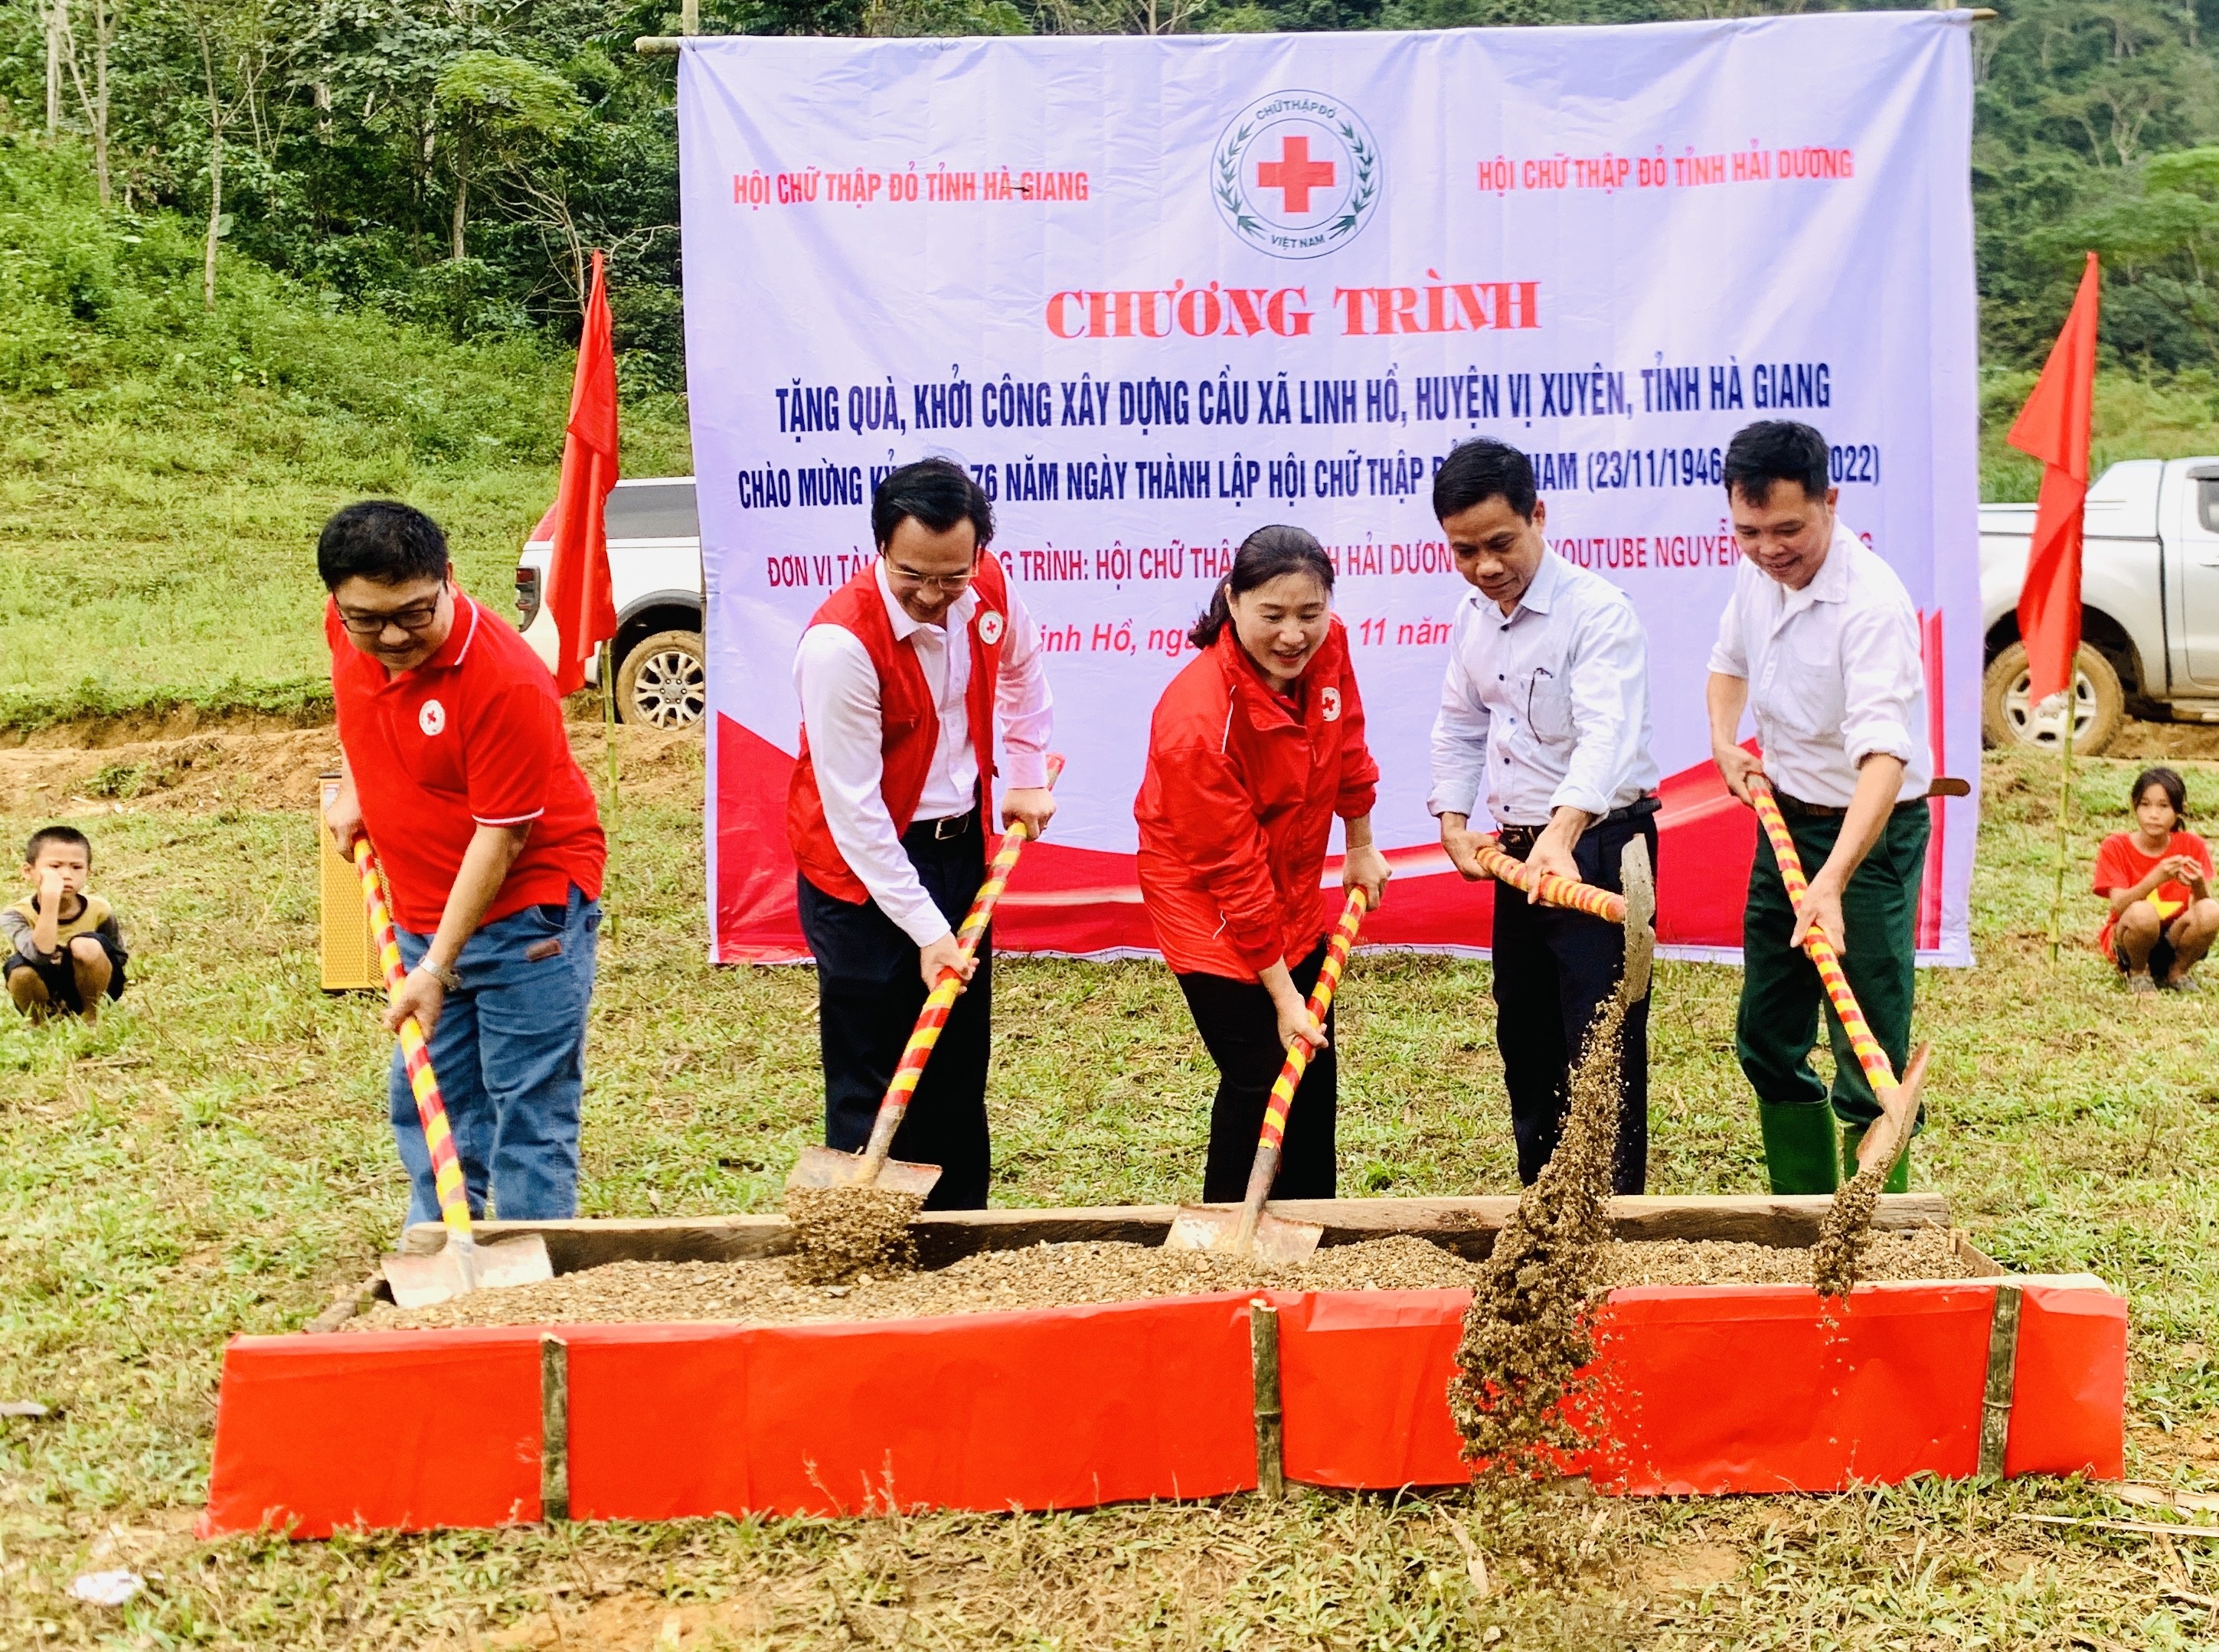 Chương trình tặng quà, khởi công xây dựng cầu thôn Lùng Chang xã Linh Hồ, huyện Vị Xuyên